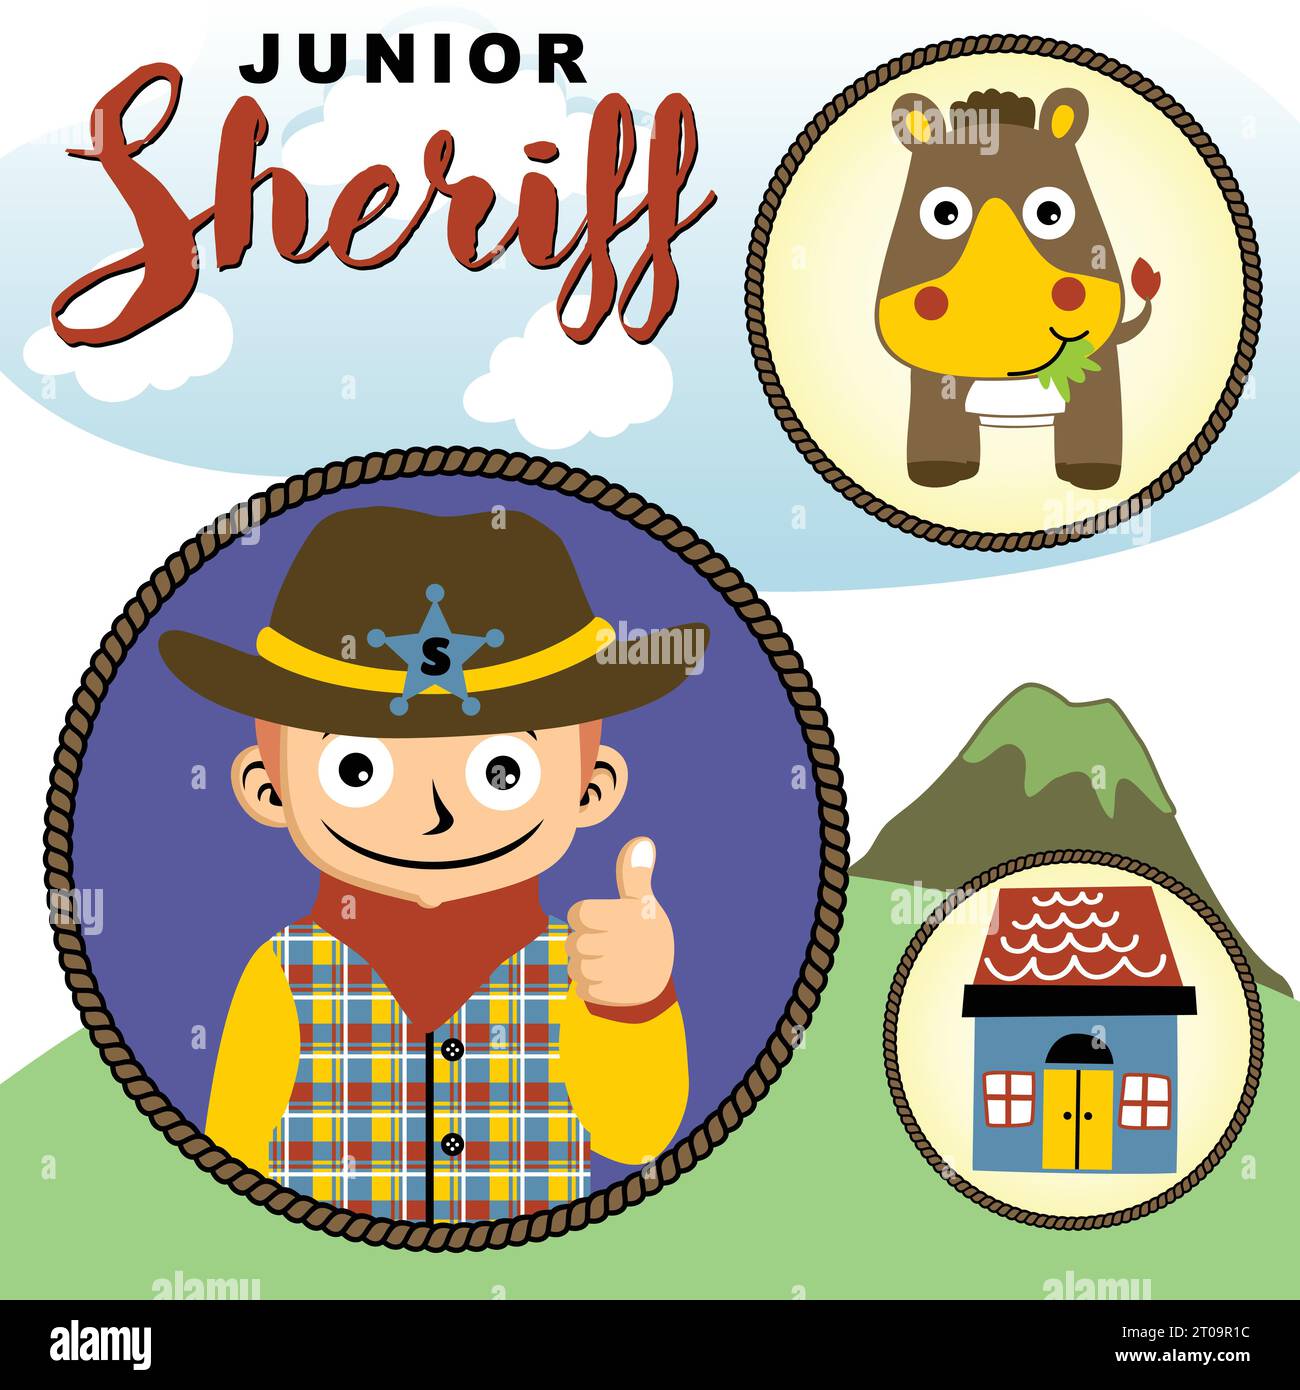 Drôle jeune garçon en costume de shérif avec cheval mignon et maison, illustration de dessin animé vectoriel Illustration de Vecteur